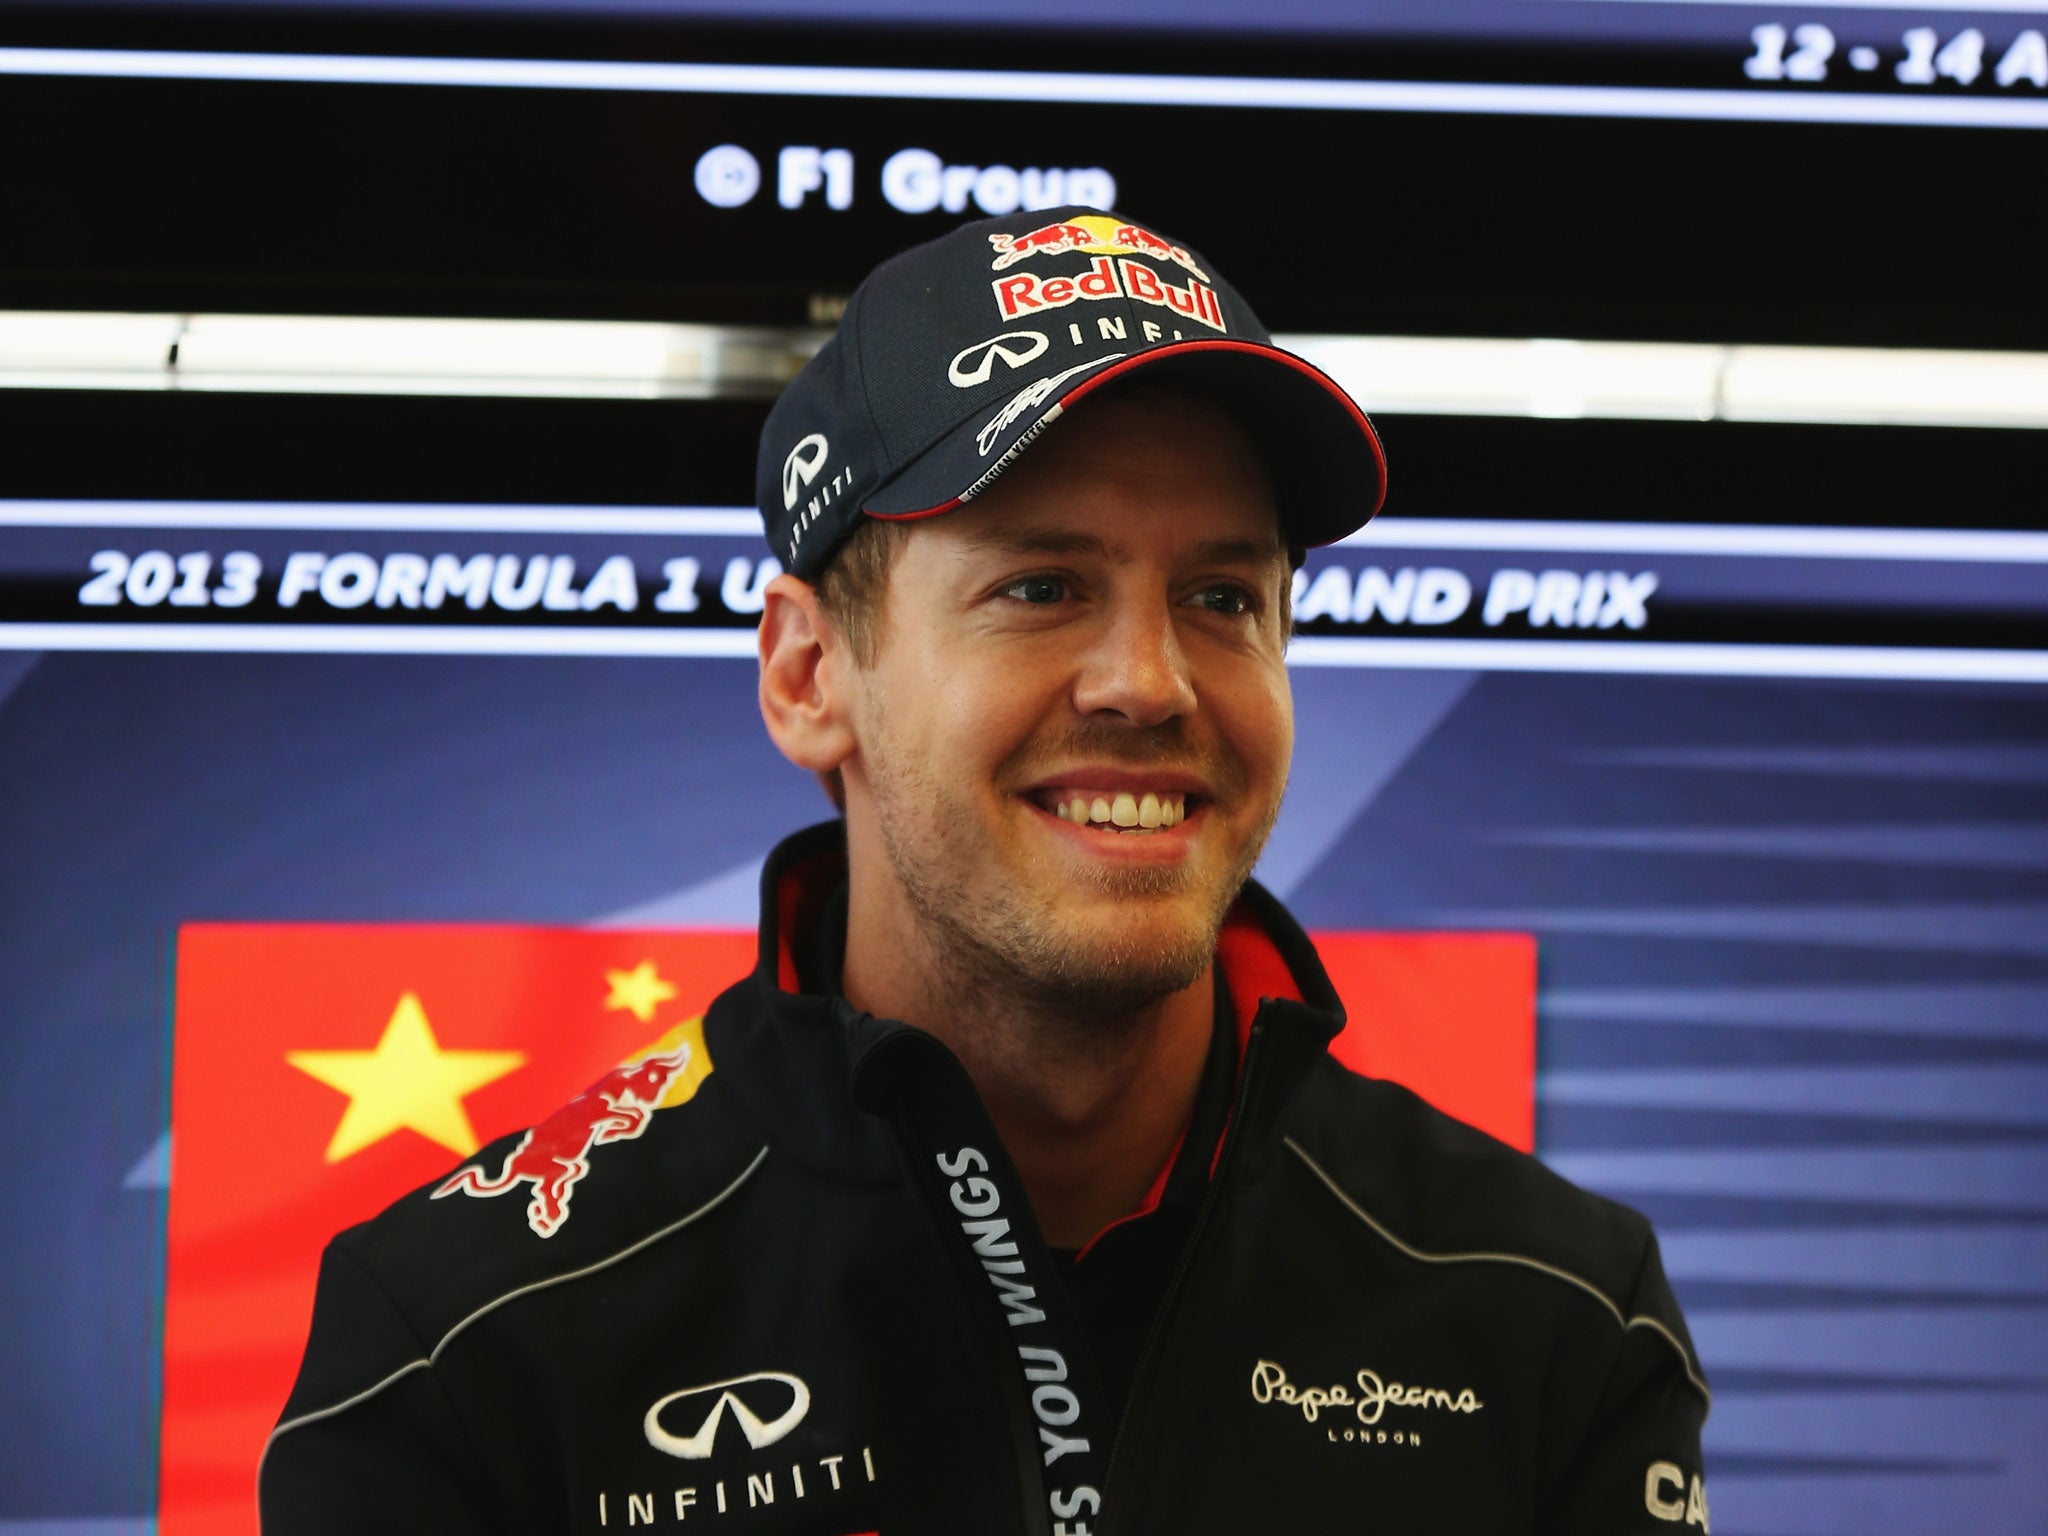 Sebastian Vettel joined Red Bull in 2009